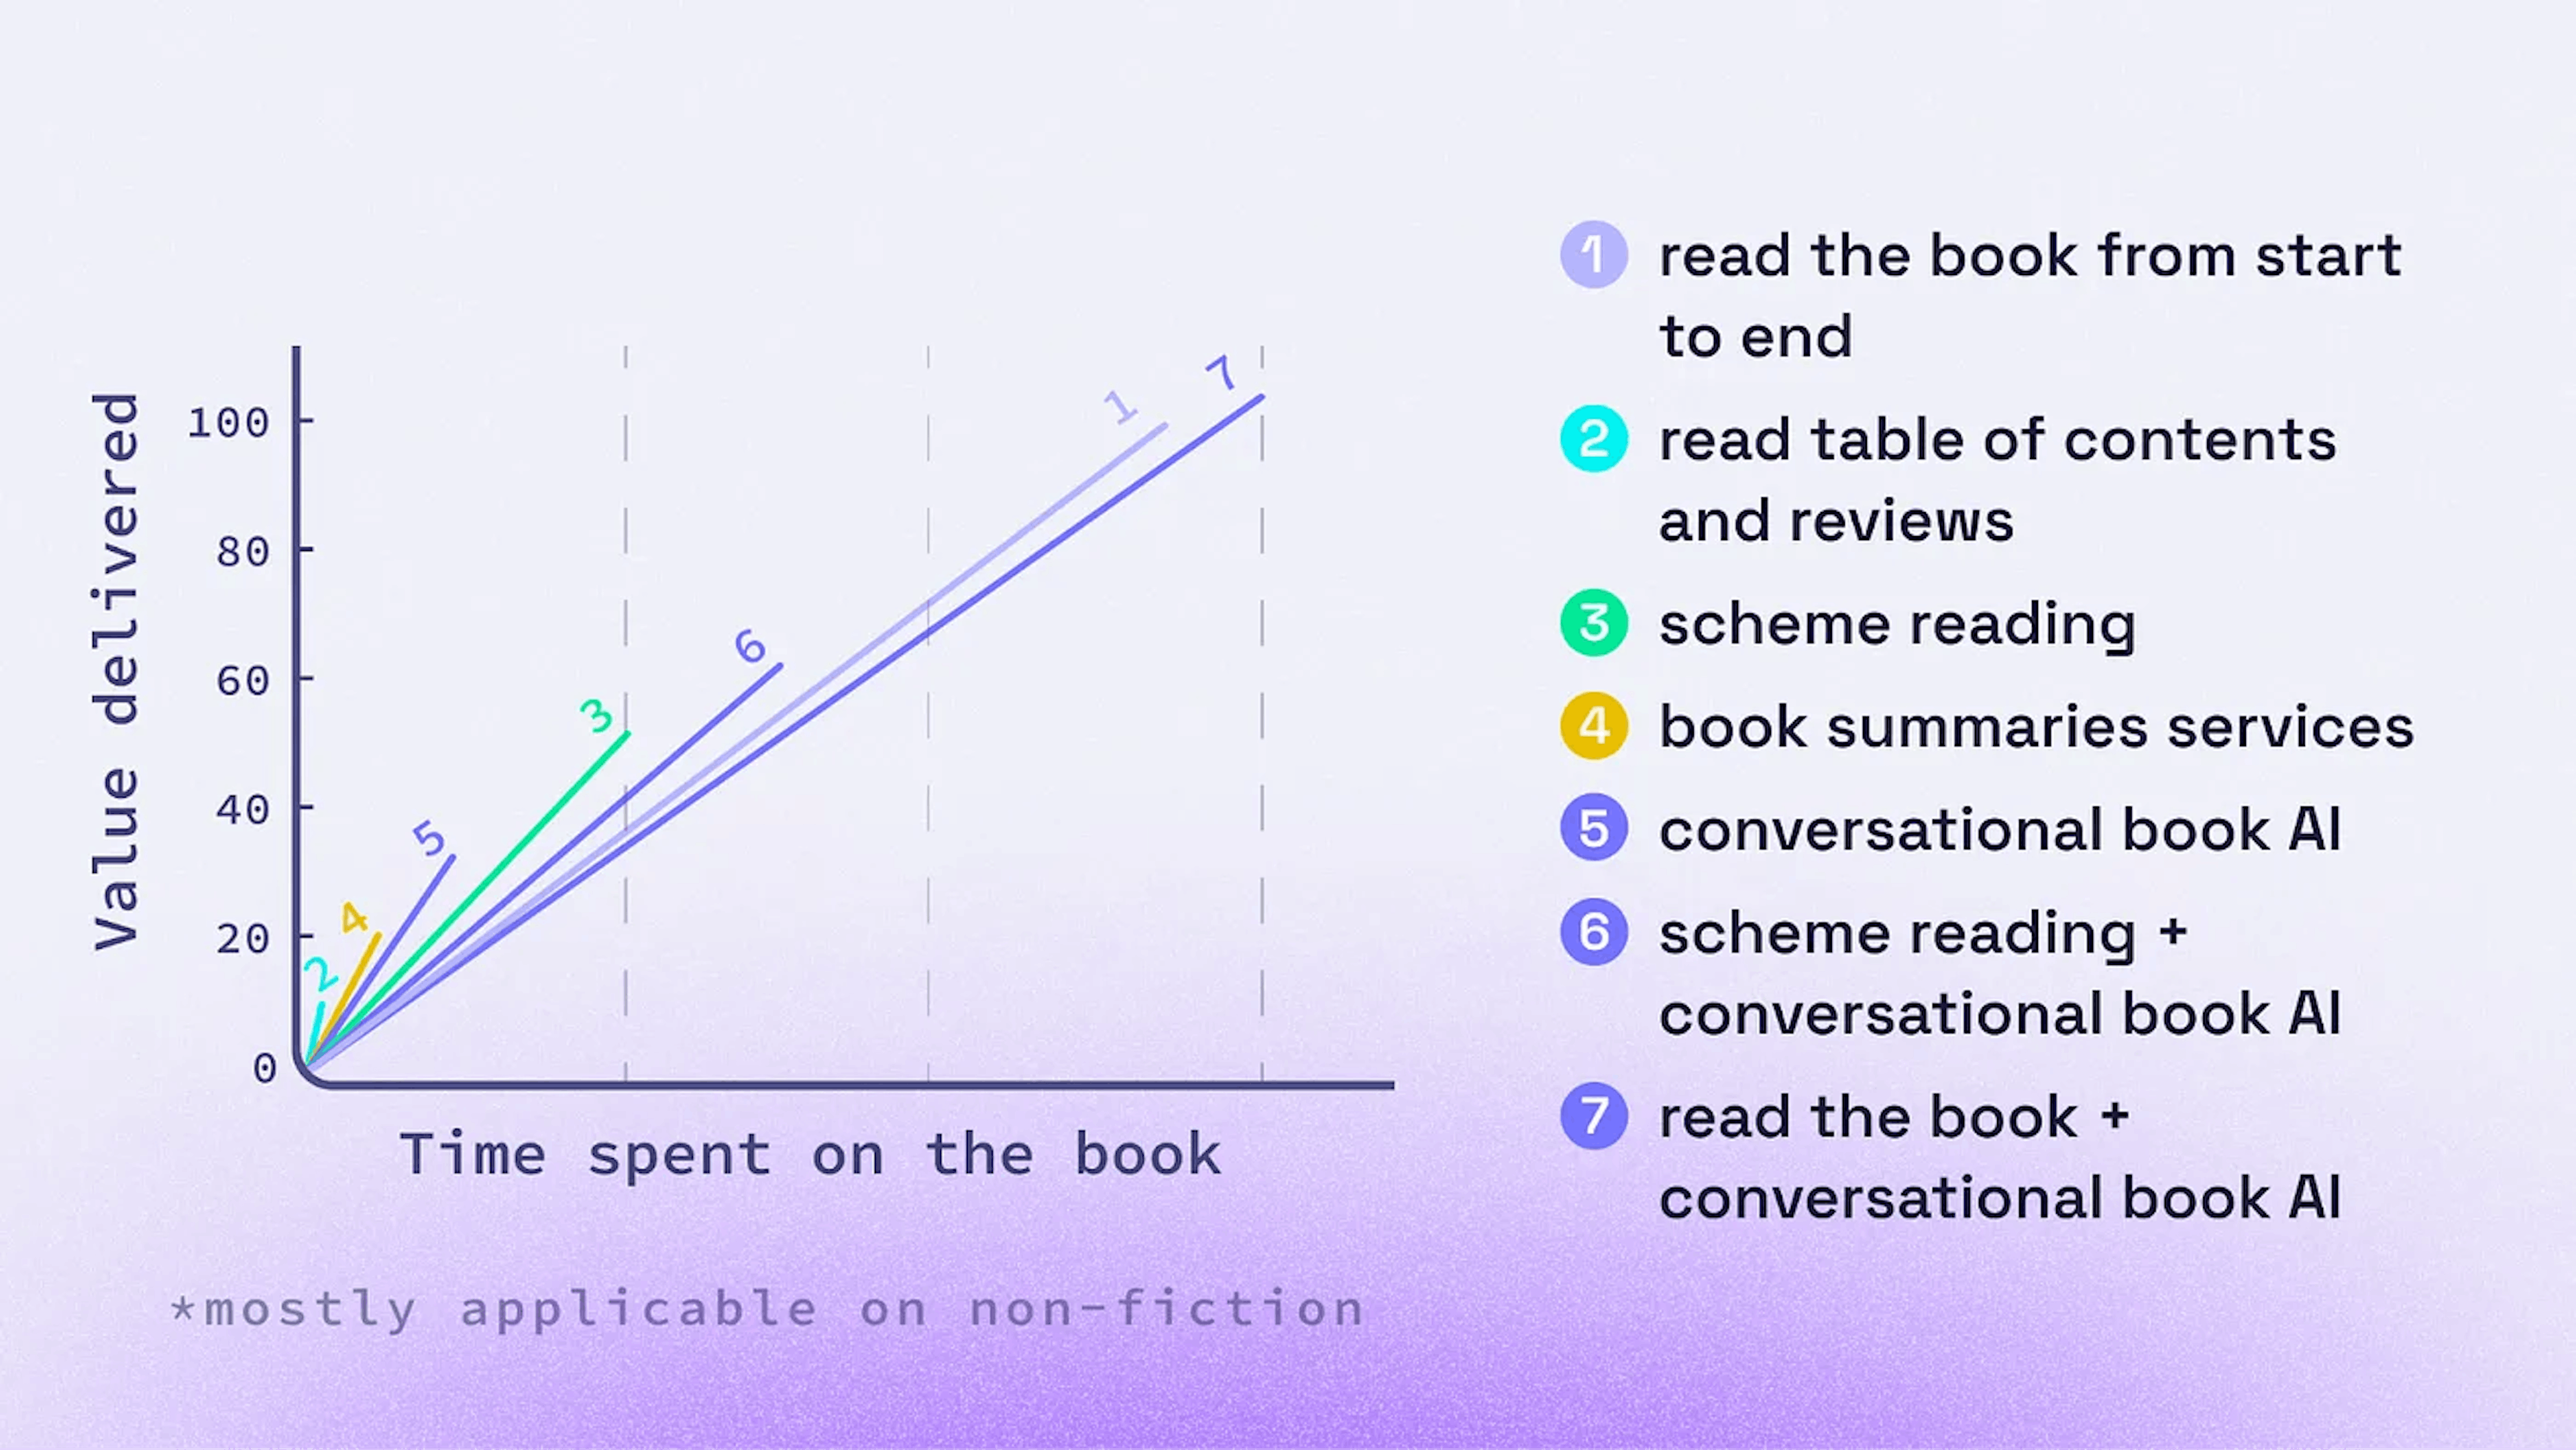 Các phương án làm quen với sách trước khi mua hoặc quyết định đọc